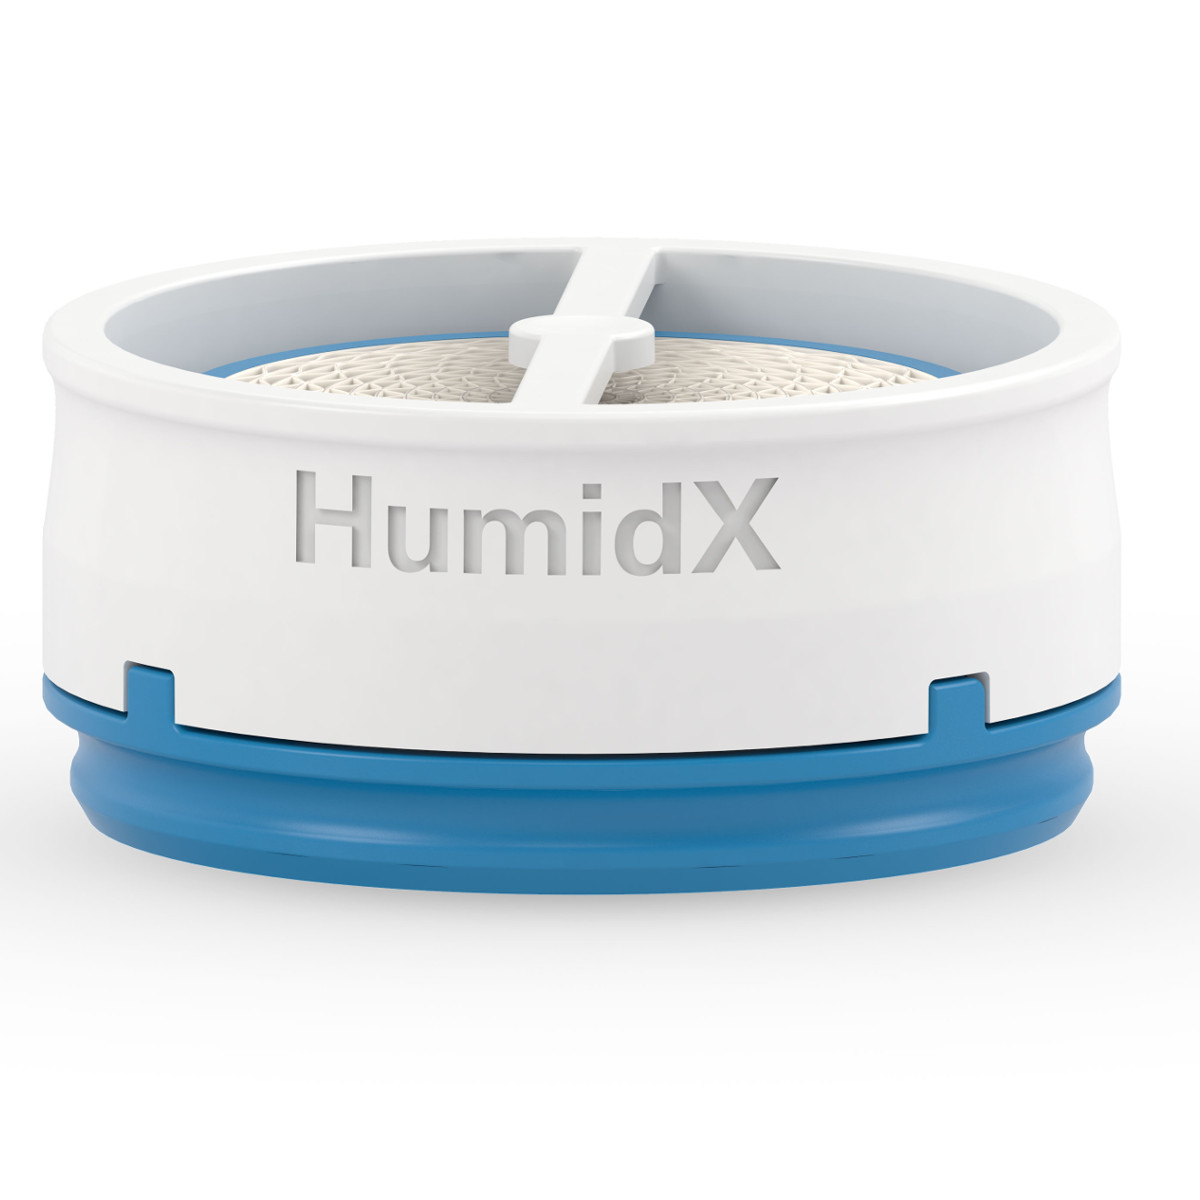 HumidX wasserloser Befeuchter für AirMini von Resmed VE - 6 Stück